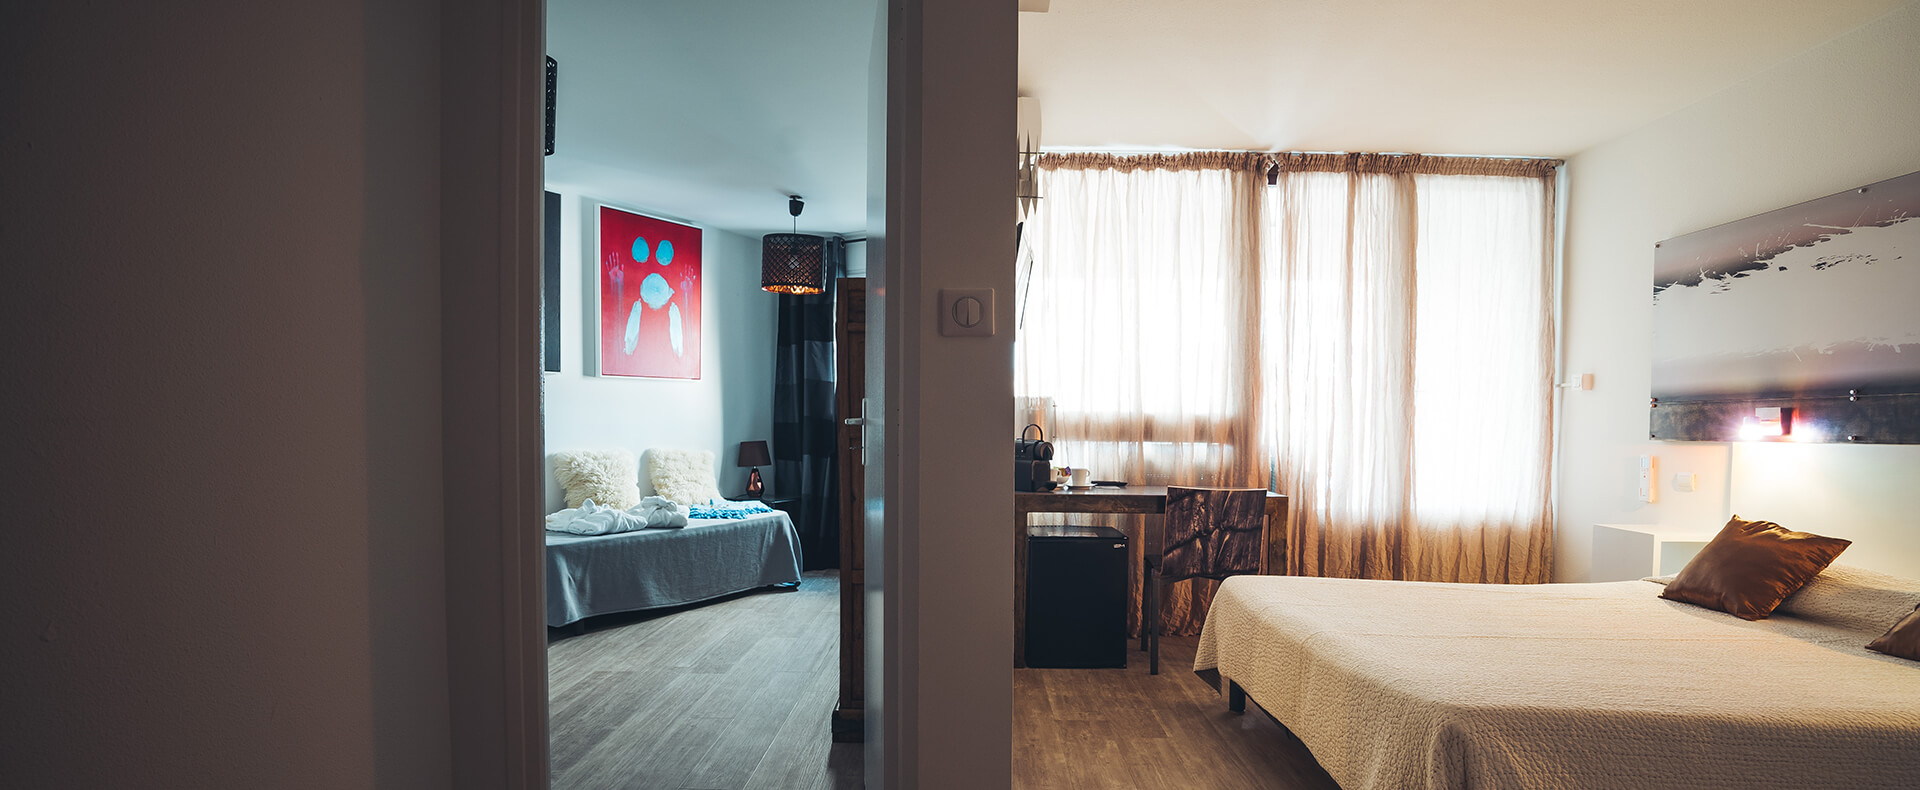 Suite in affitto Ventiquattro, Hotel Cap d'Agde